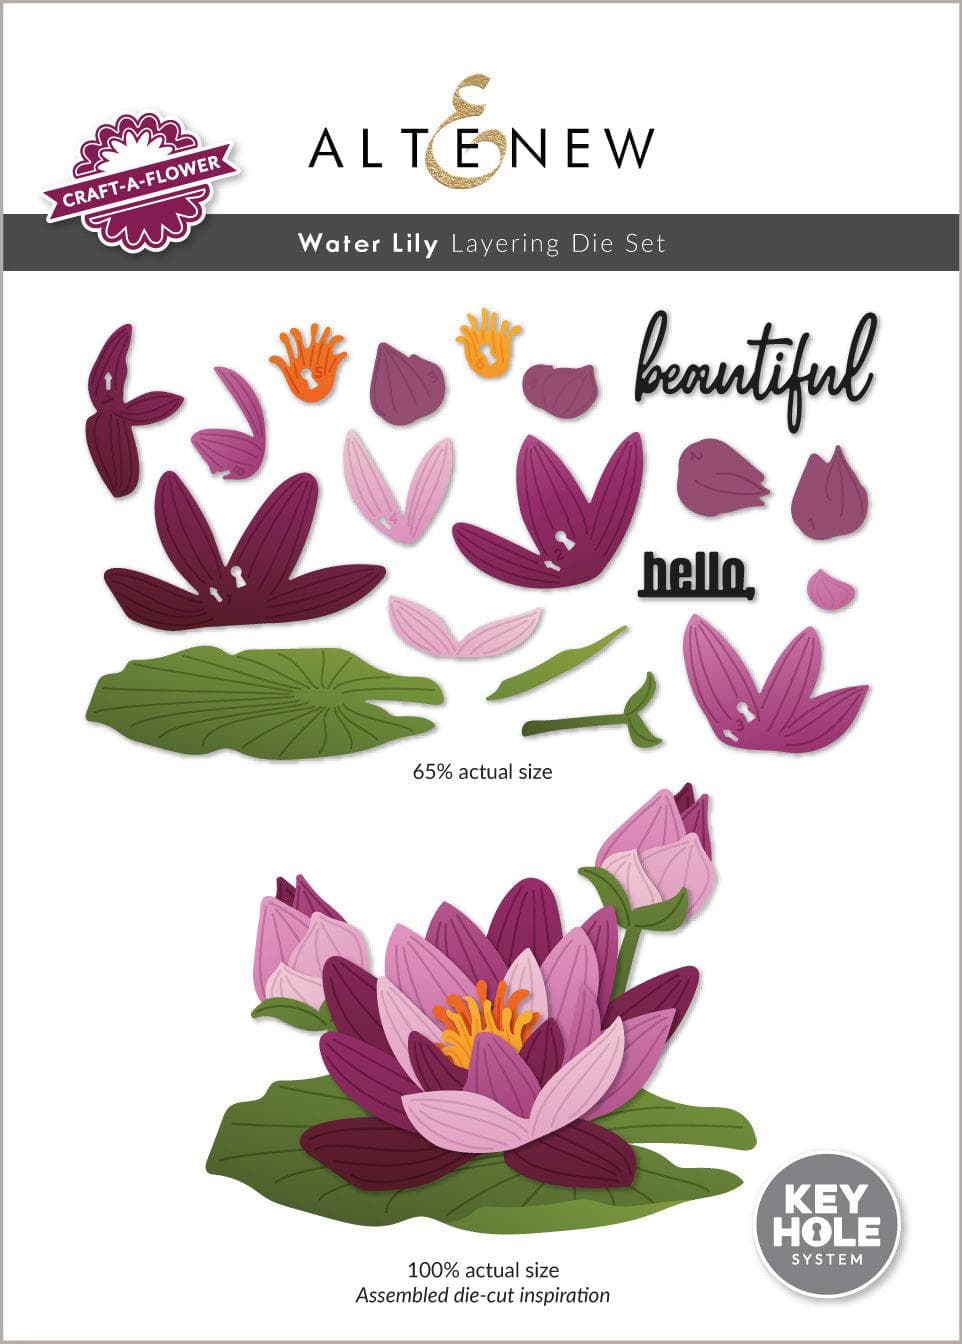 Part A-Glitz Art Craft Co.,LTD Dies Craft-A-Flower: Water Lily Layering Die Set